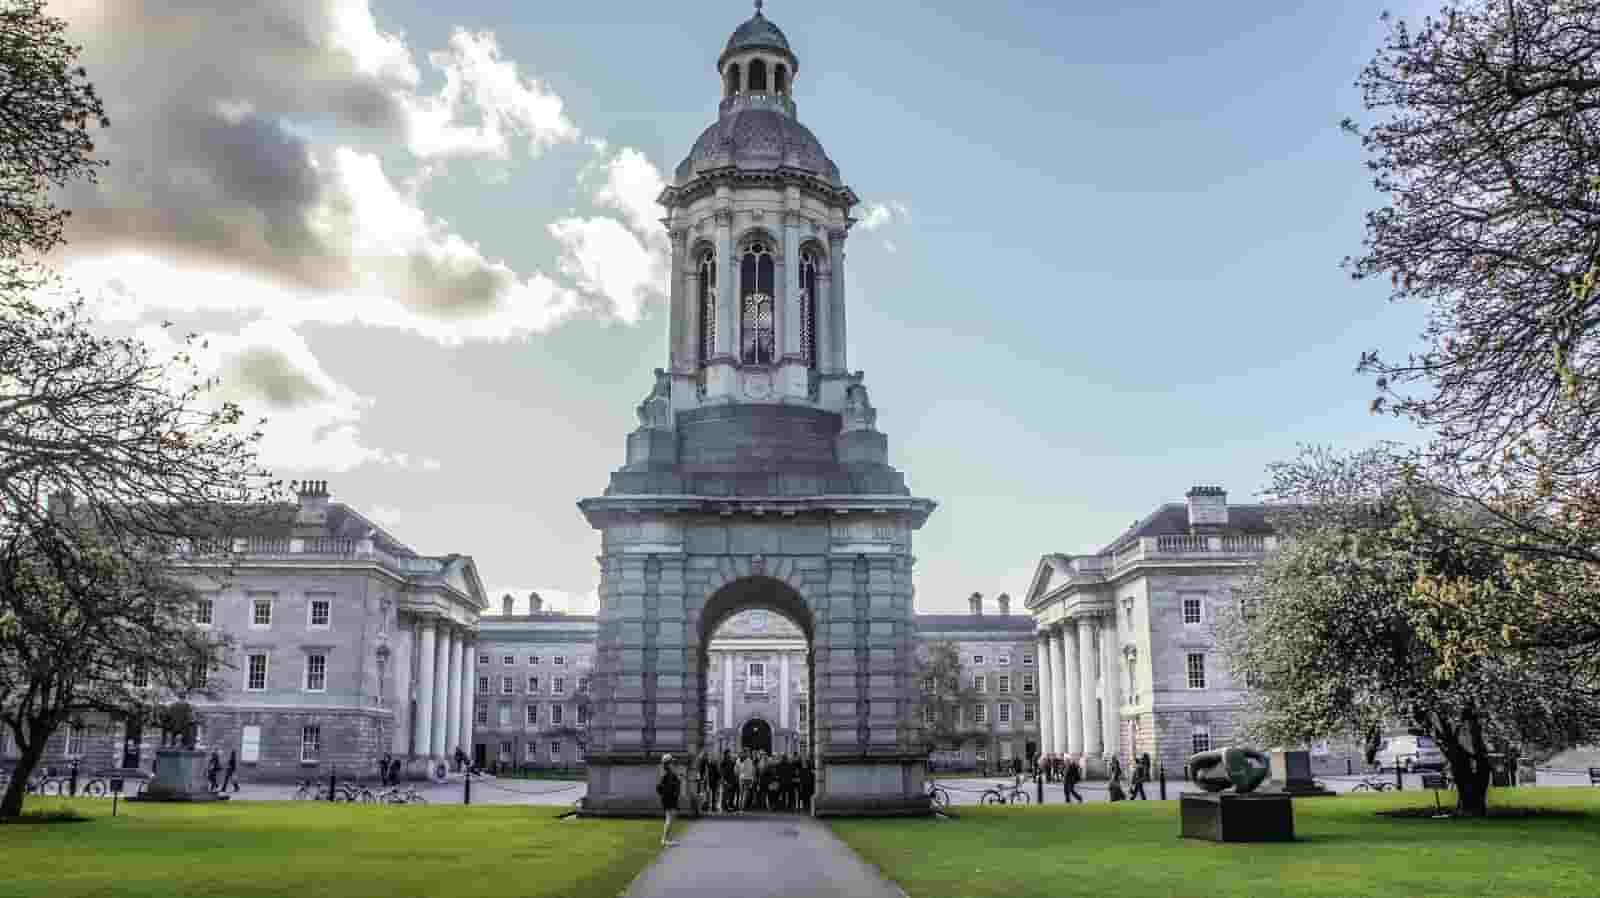 Best Engineering Courses in Ireland